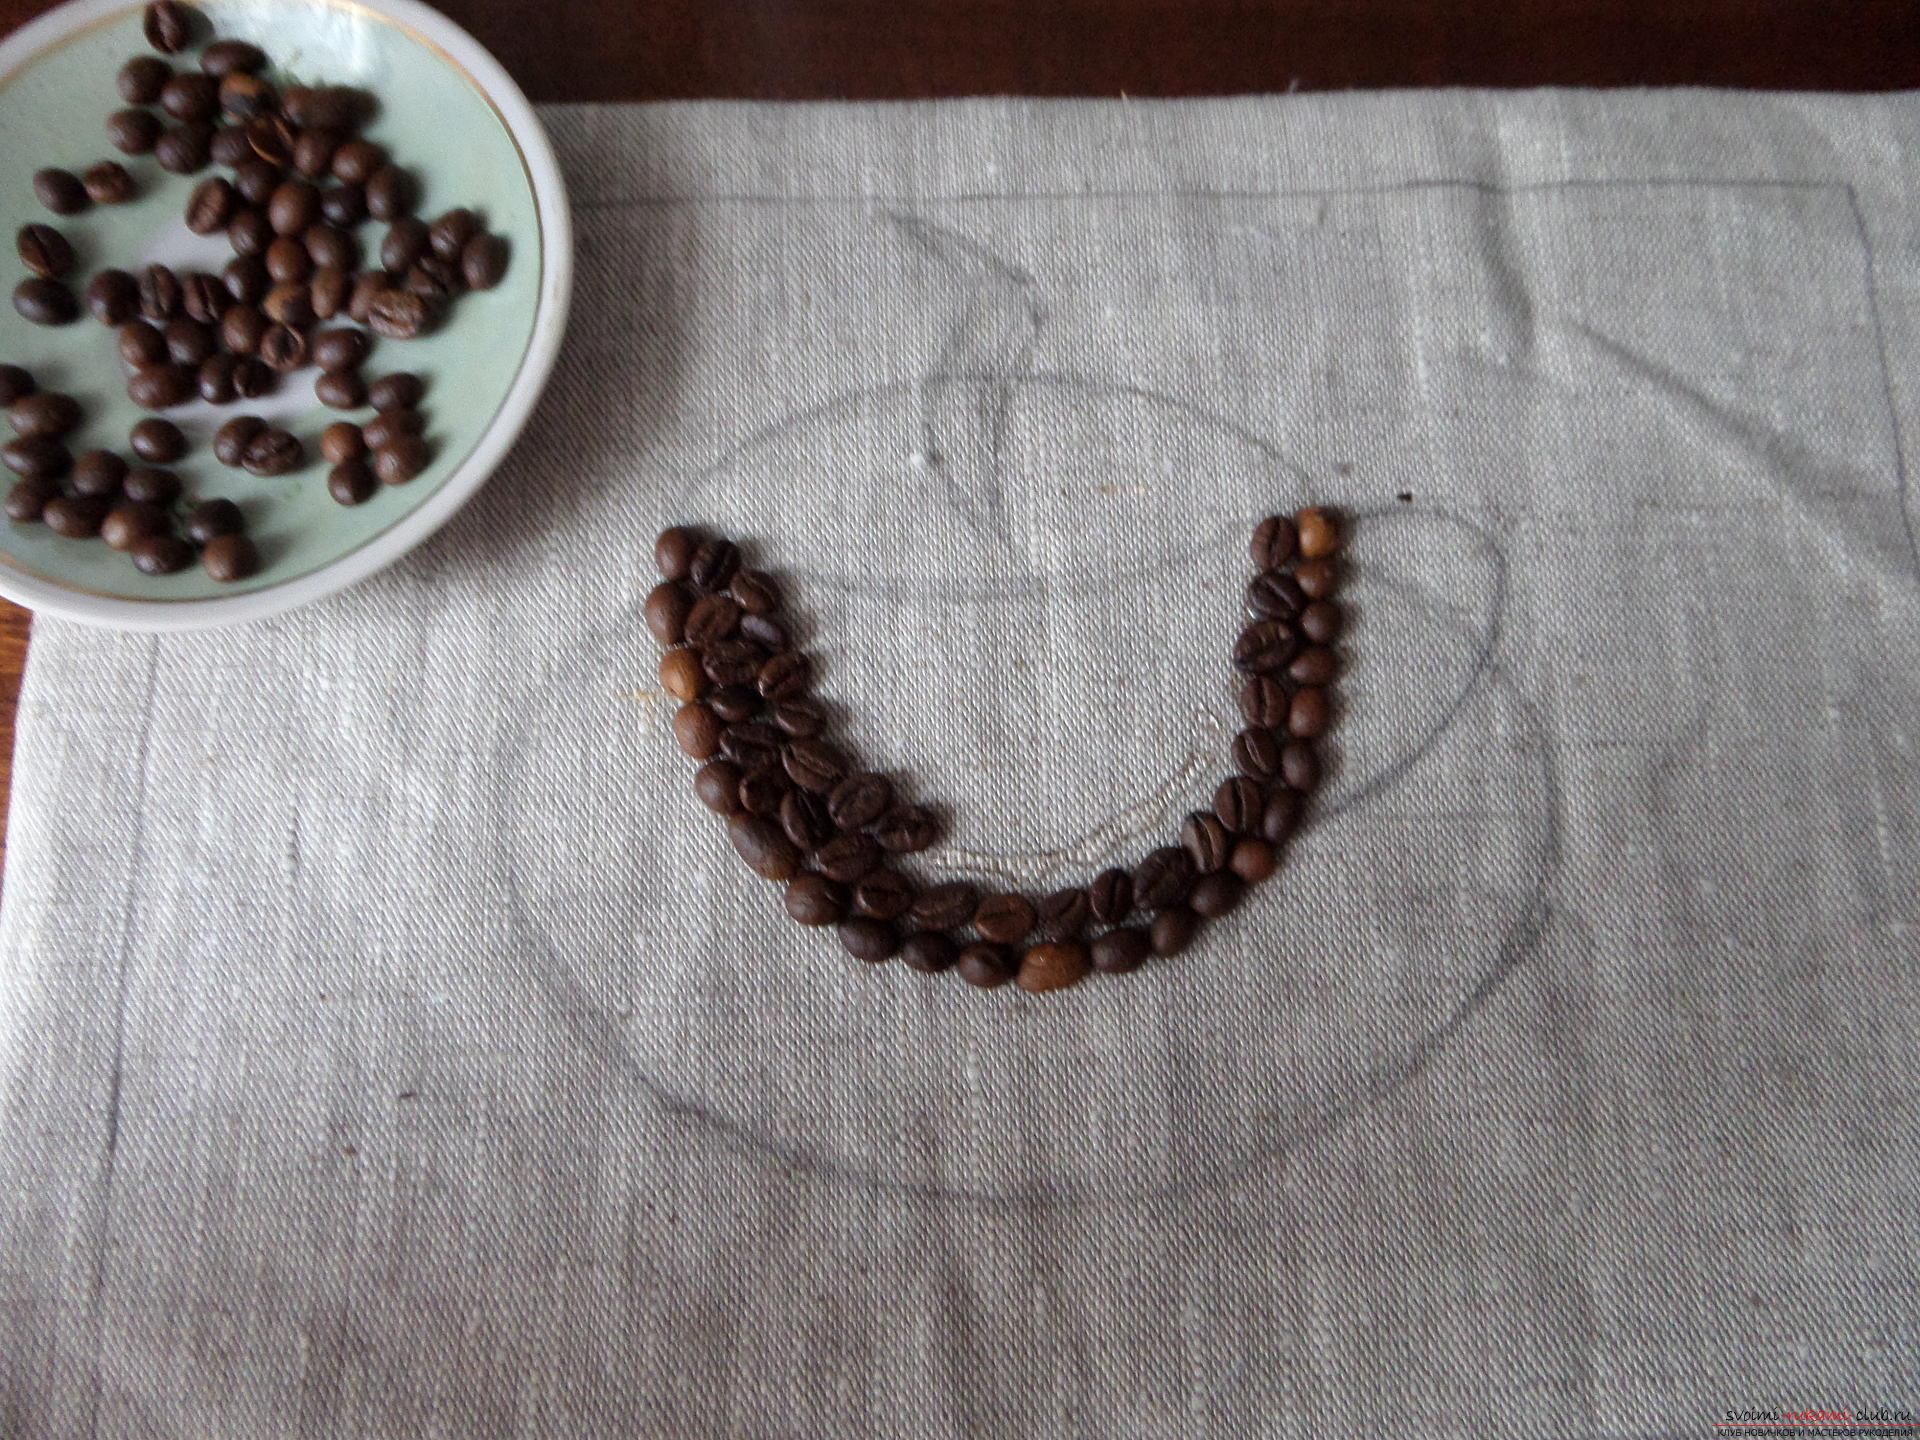 Этот мастер-класс с фото и описанием научит как делать кофейные картины из зерен кофе для кухни.. Фото №22